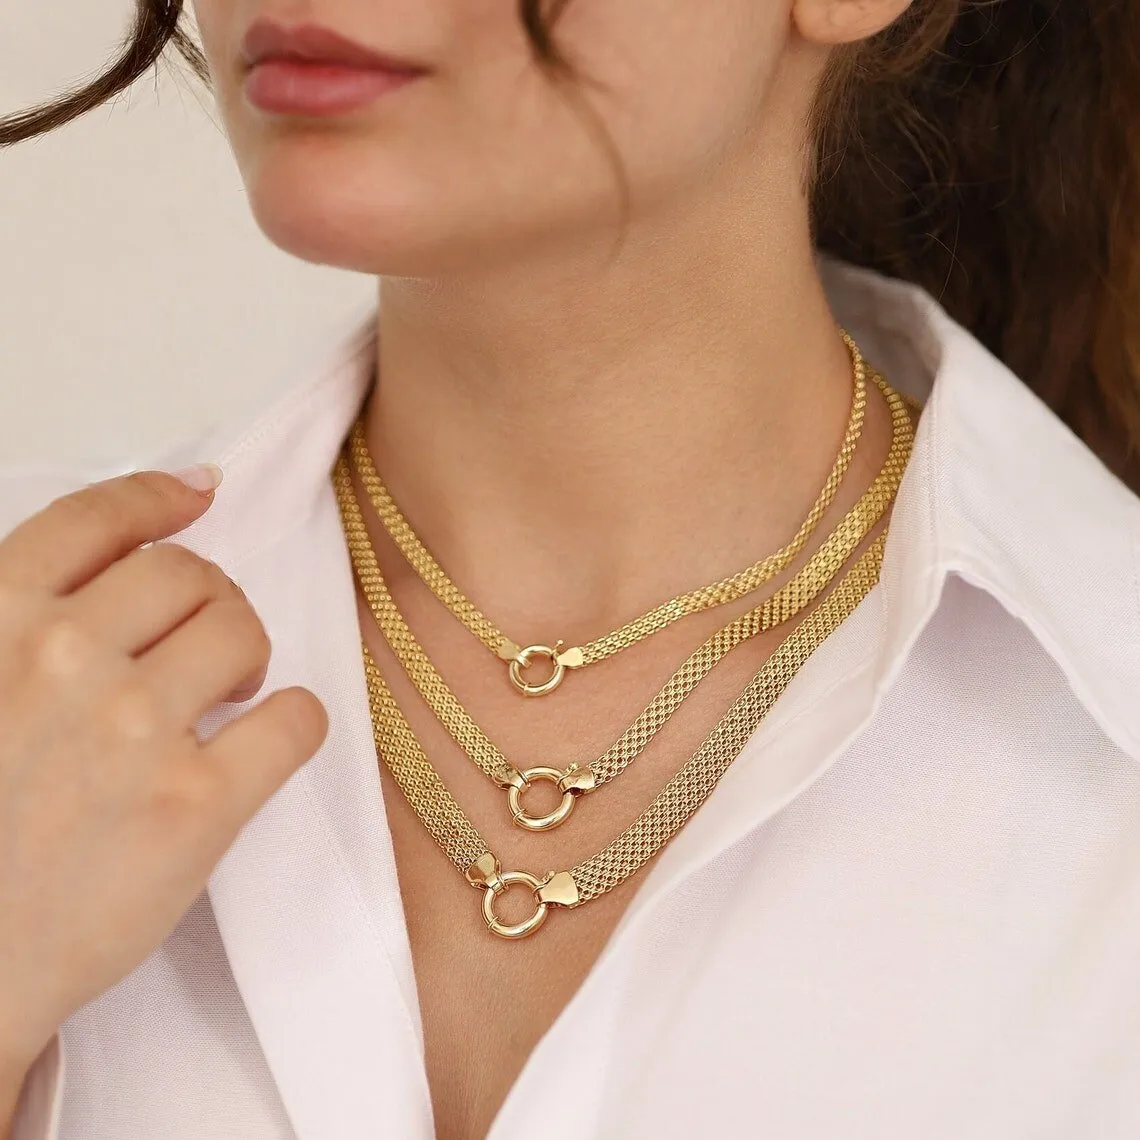 Yeni ürün fikirleri Bismarck zincirler kolye Sailor toka Charms 18k altın kaplama paslanmaz çelik kolye takı kadınlar için